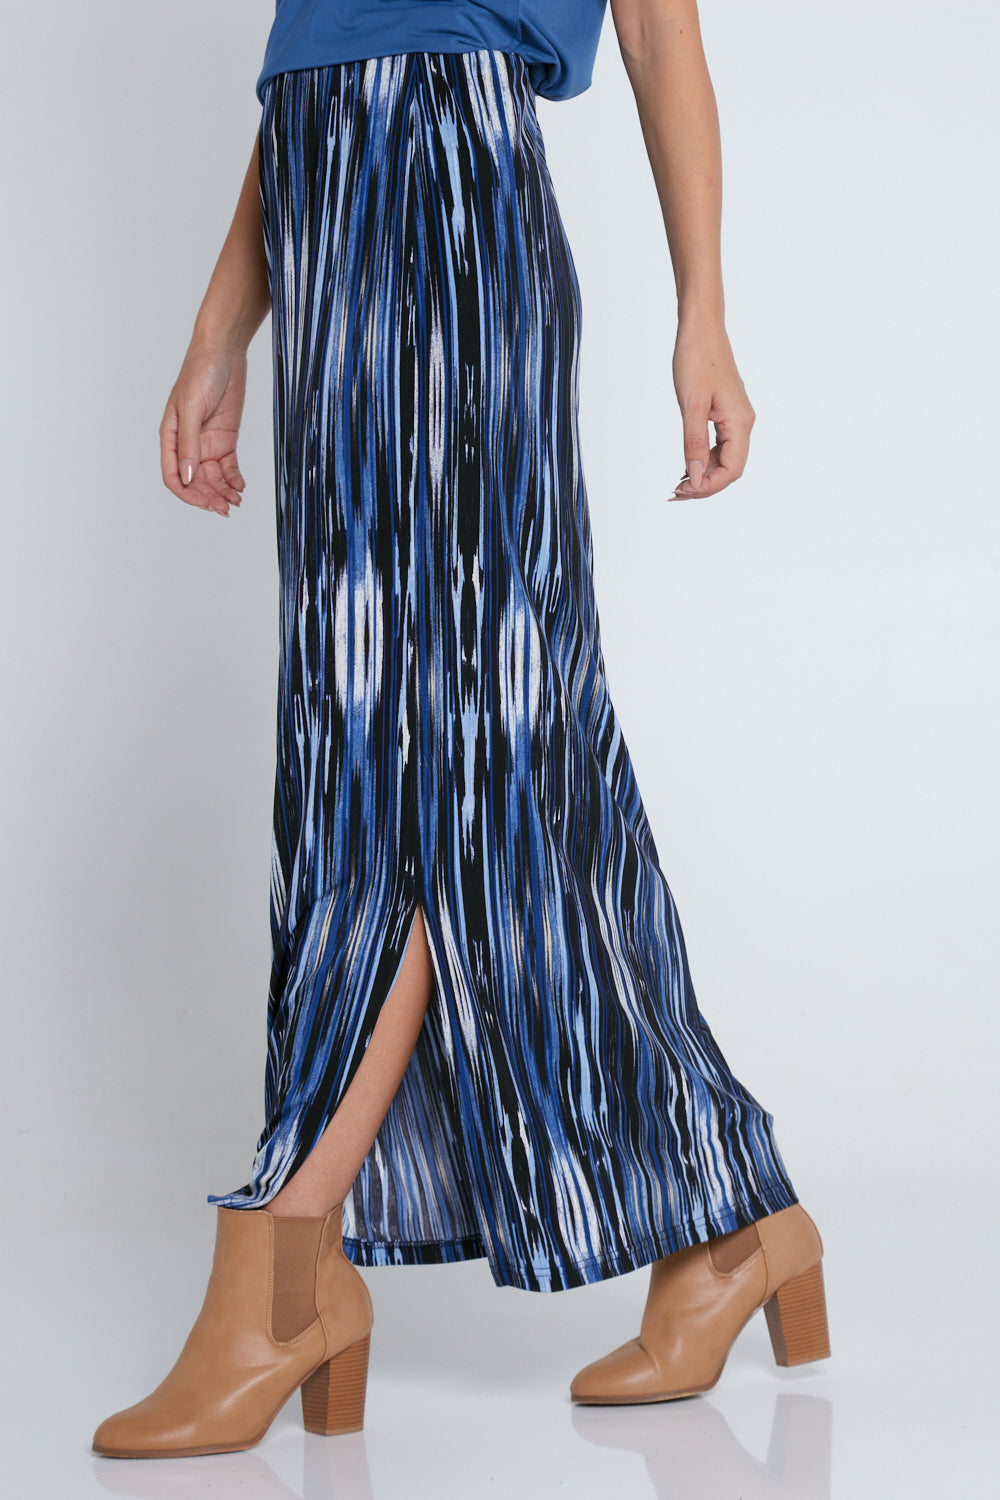 Adelaide Skirt - Blue/Stripe Print